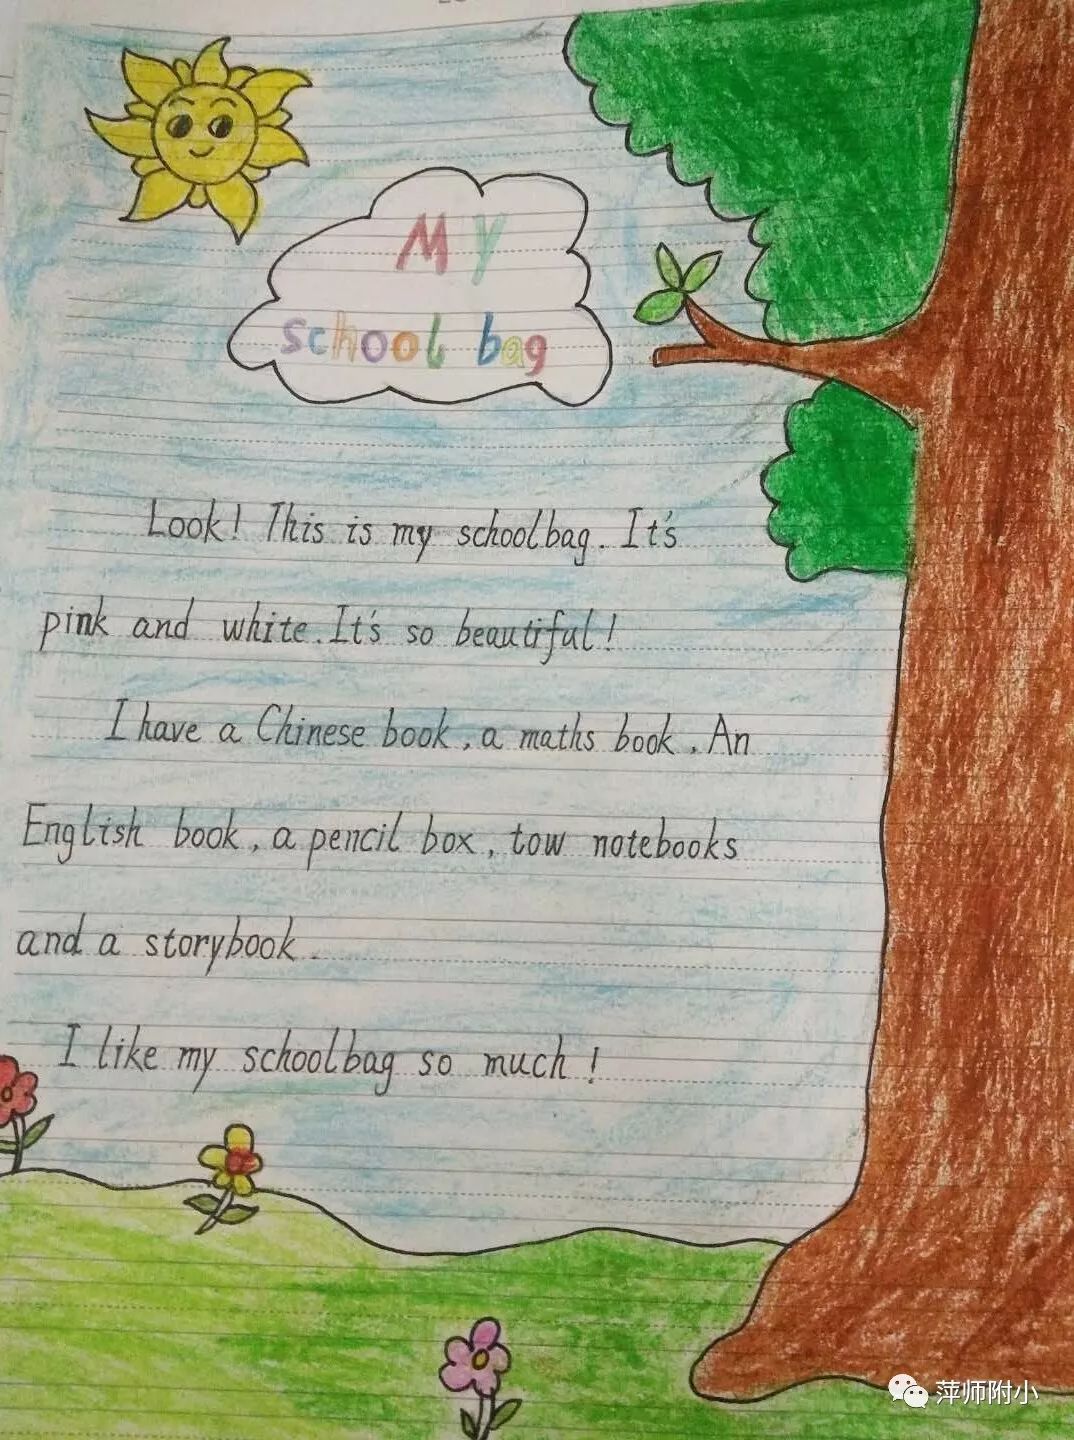 动态| 萍师附小四年级举办英语短文书写比赛,欢迎围观!